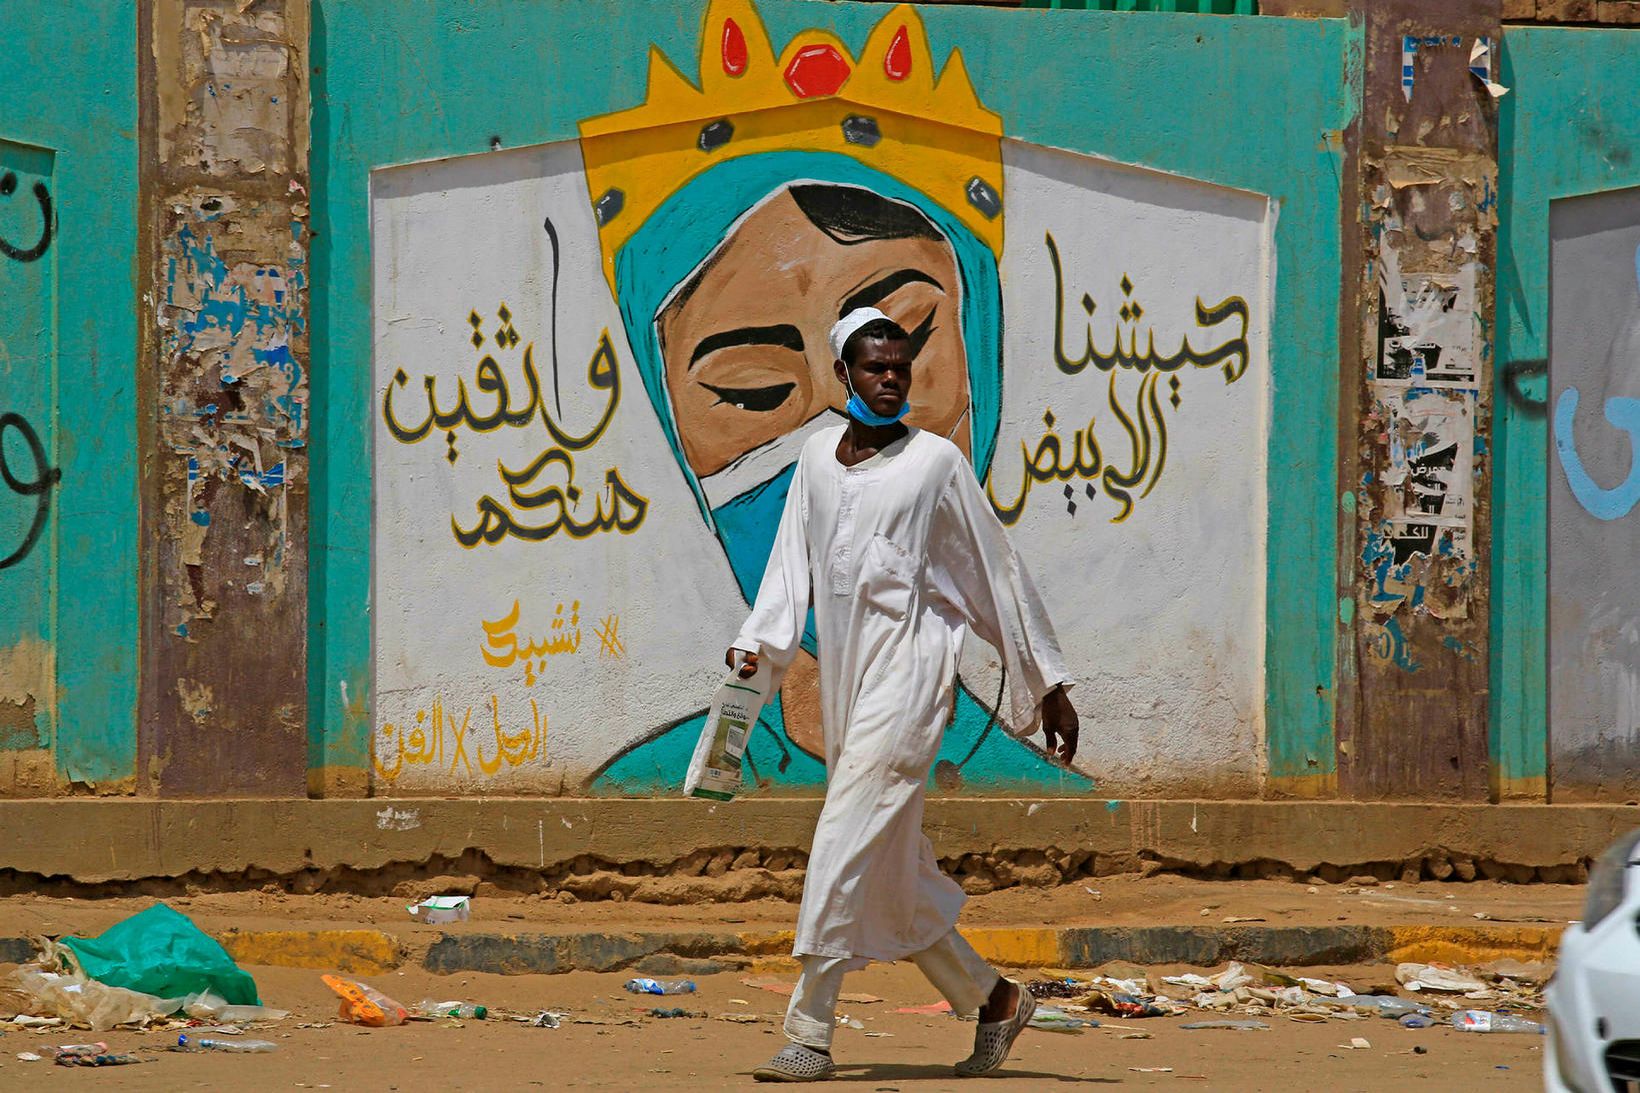 Endurskoðun laga Súdan kemur í kjölfar þess að Omar al-Bashir …